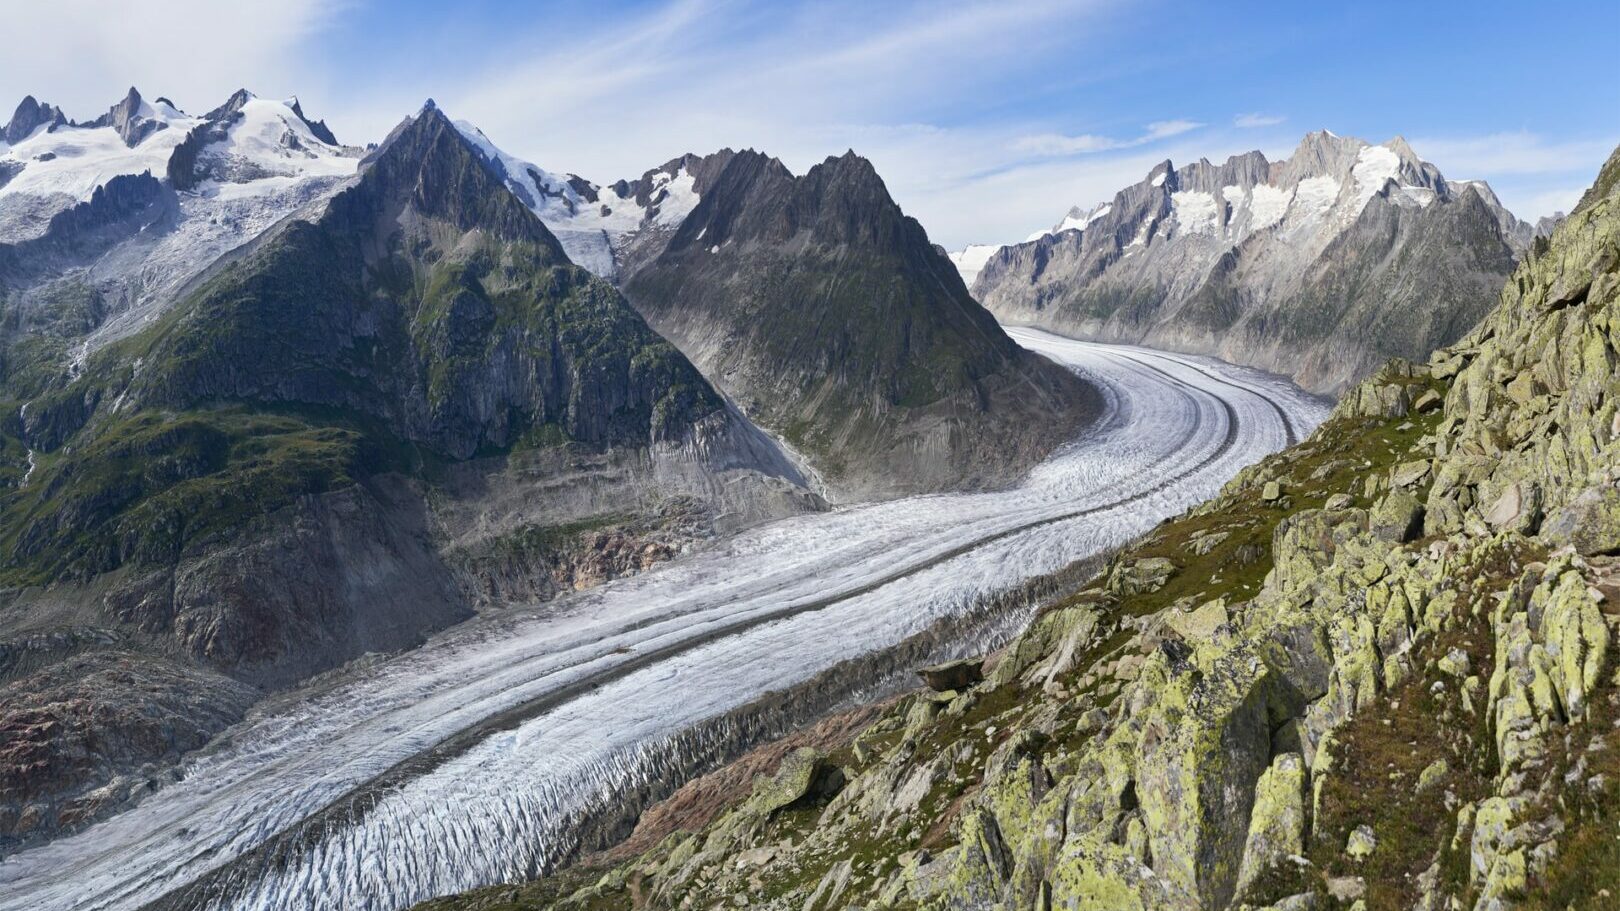 Der Aletsch-Gletscher in der Schweiz